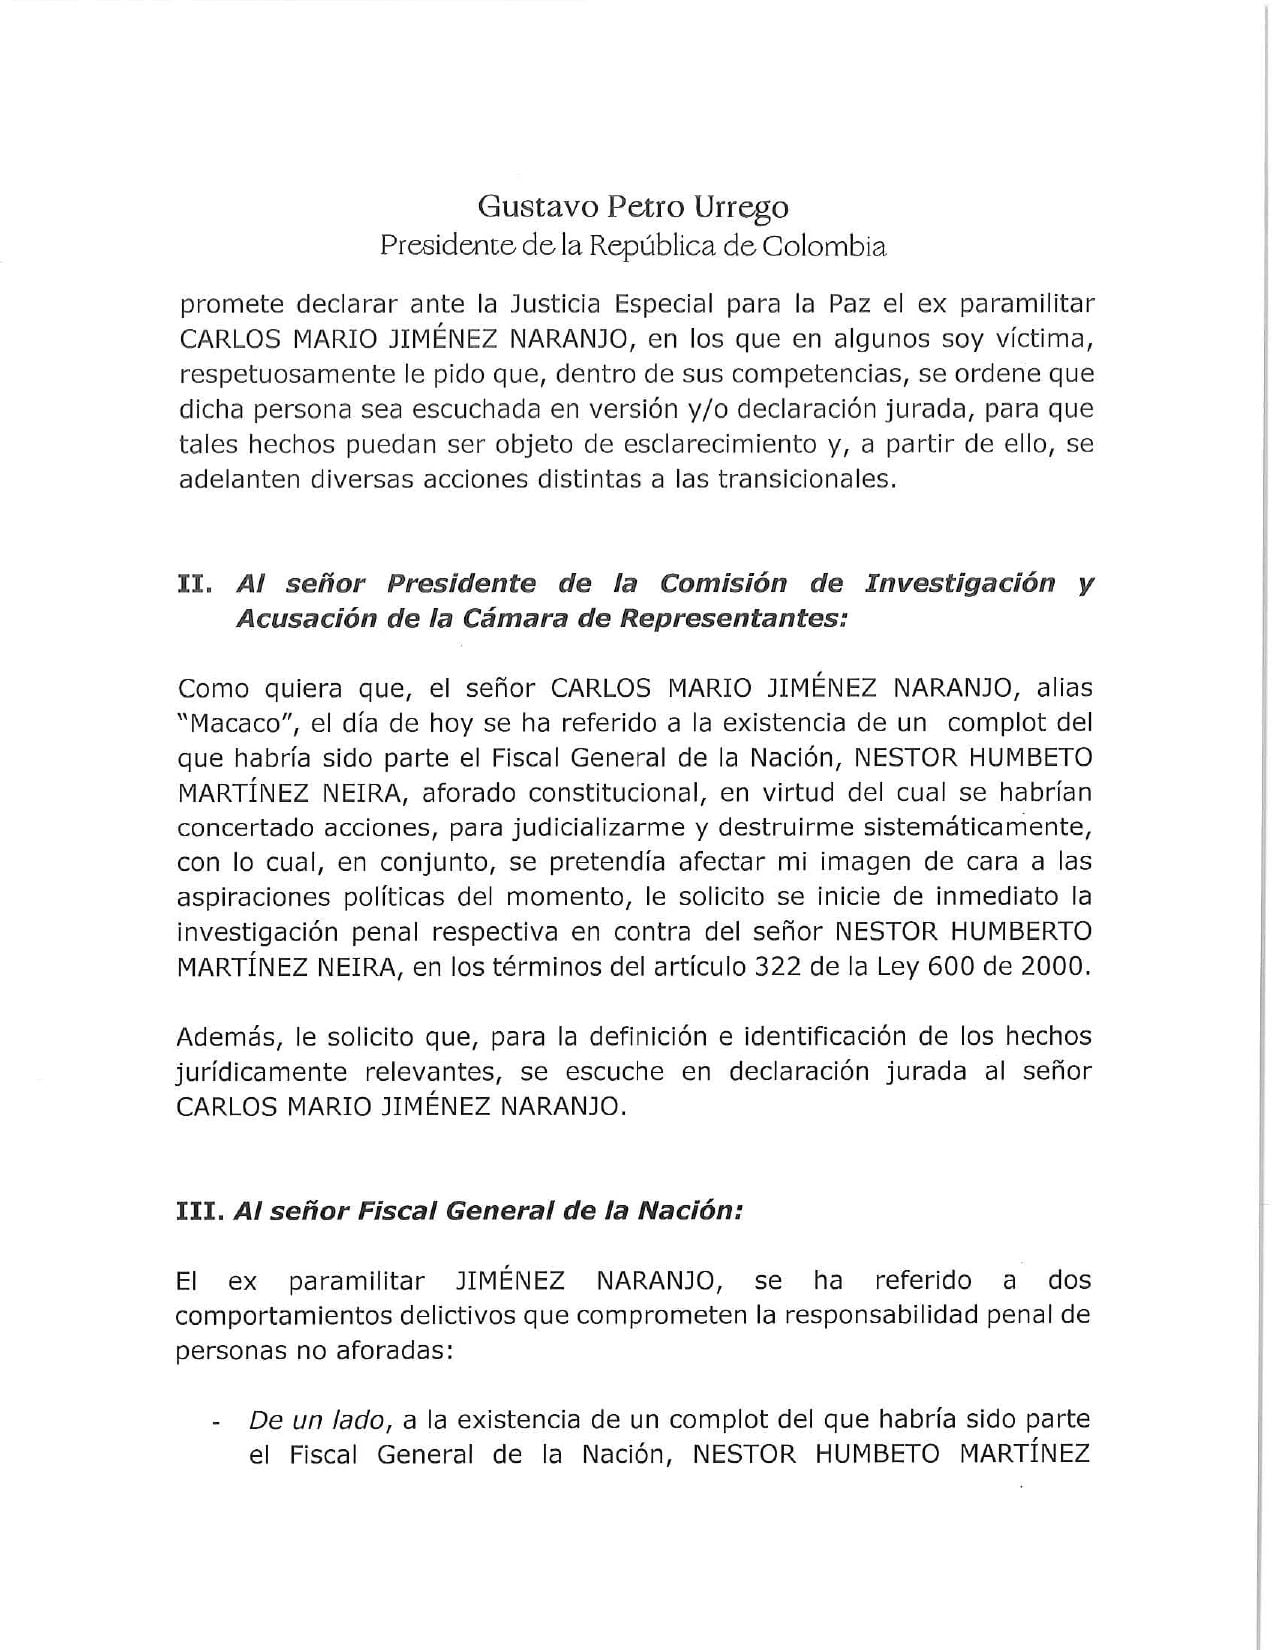 Petro pidió a la Comisión de Investigación y Acusación de la Cámara de Representantes y a la Fiscalía investigar al exfiscal Martínez.